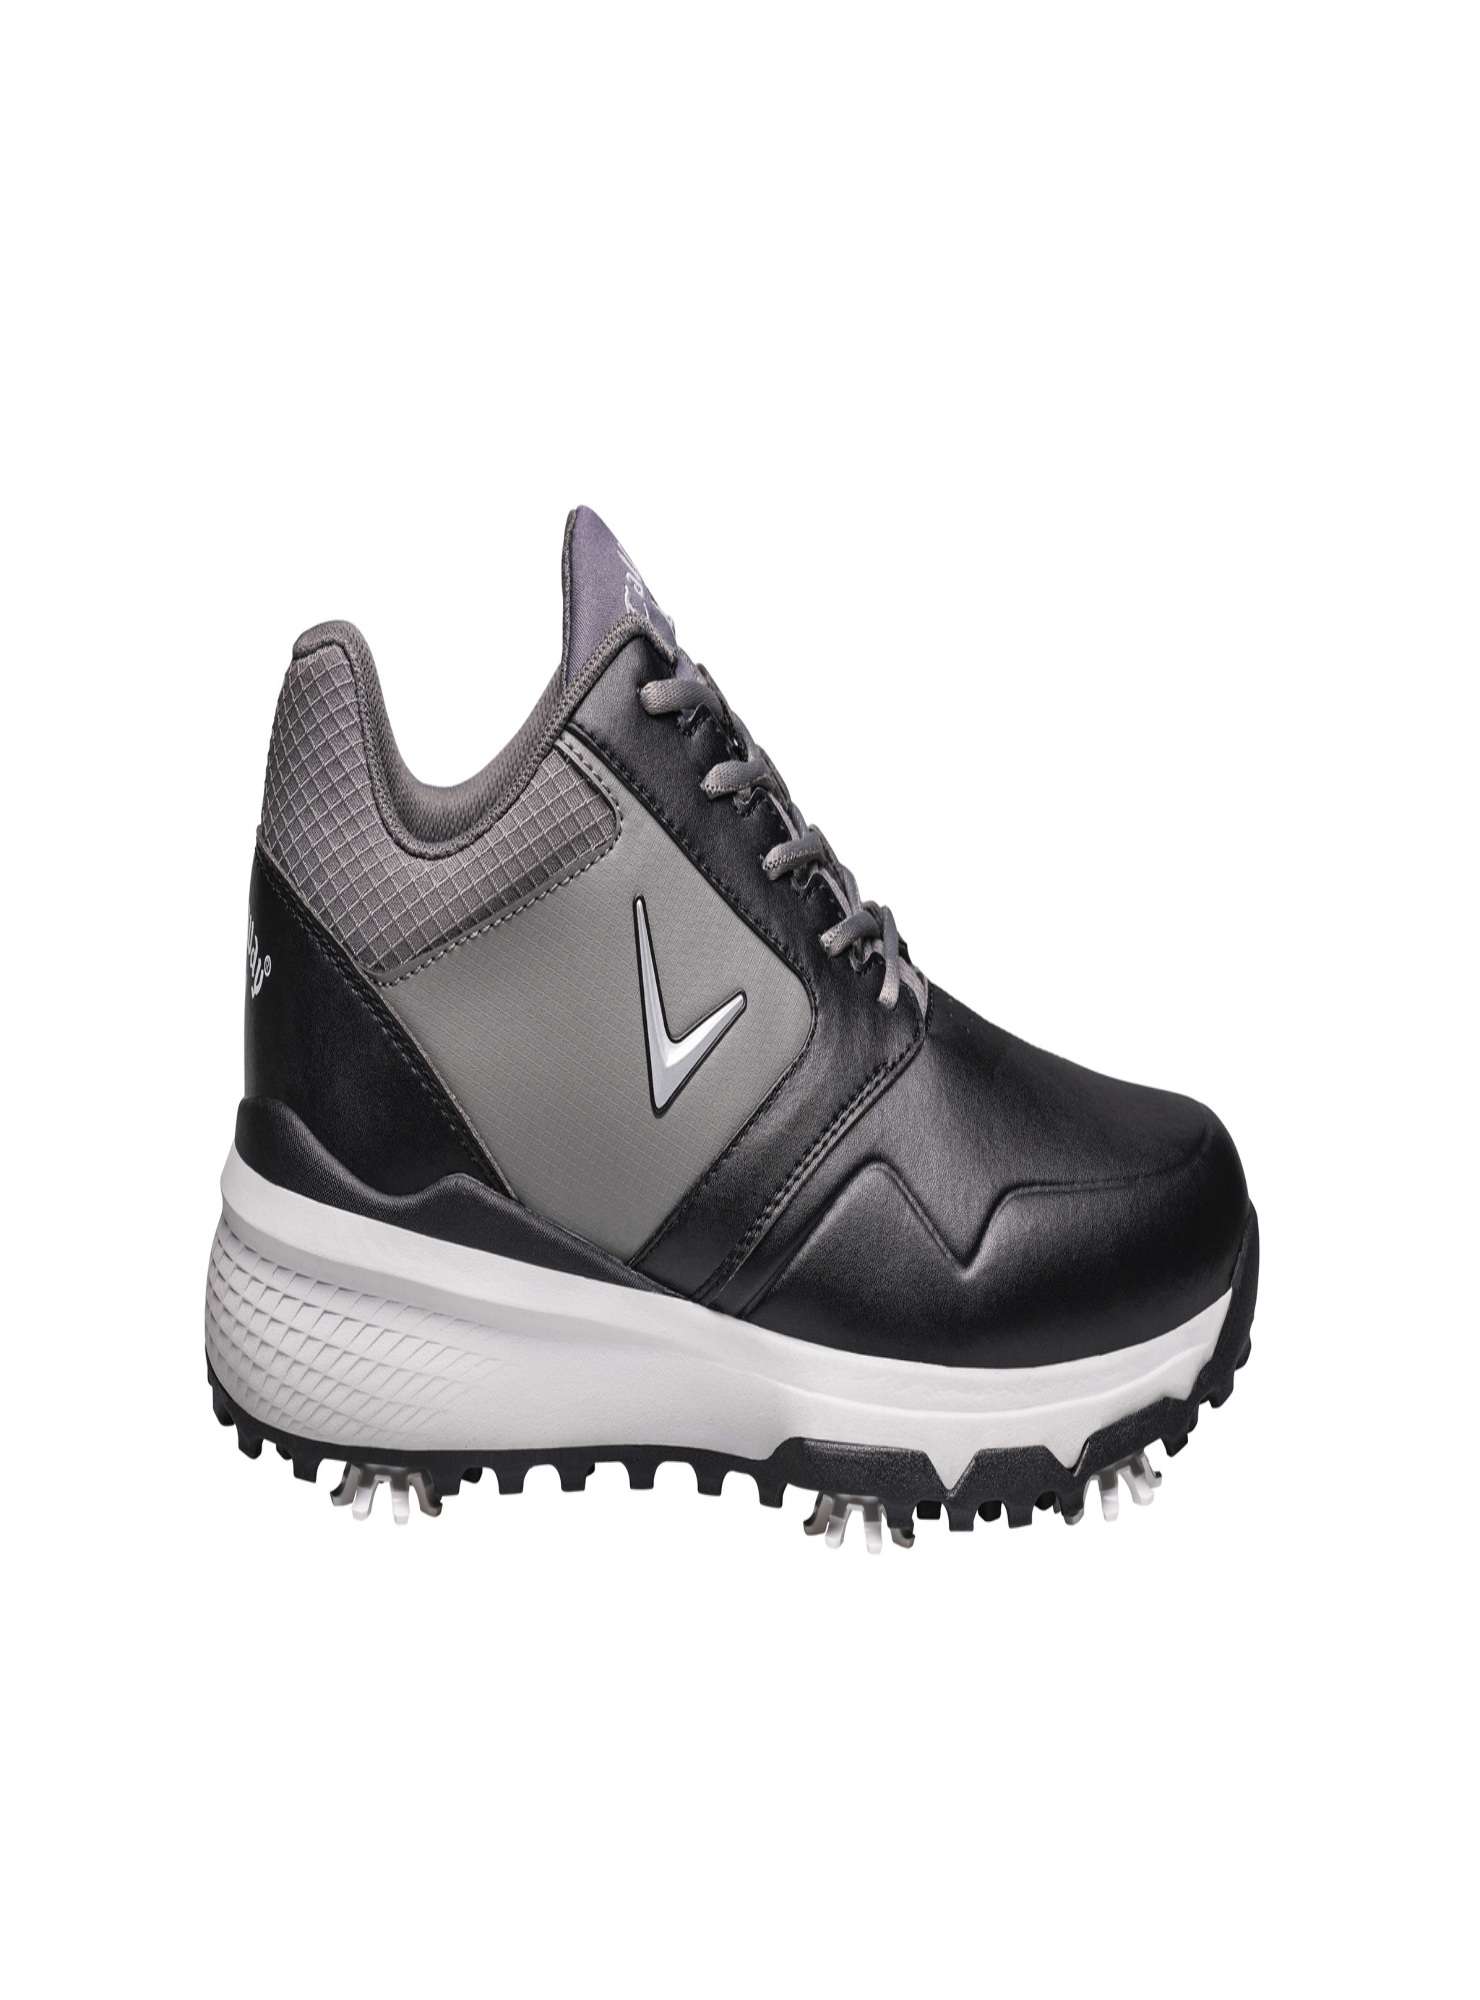 chaussures-golf-callaway-chev-ls-noir